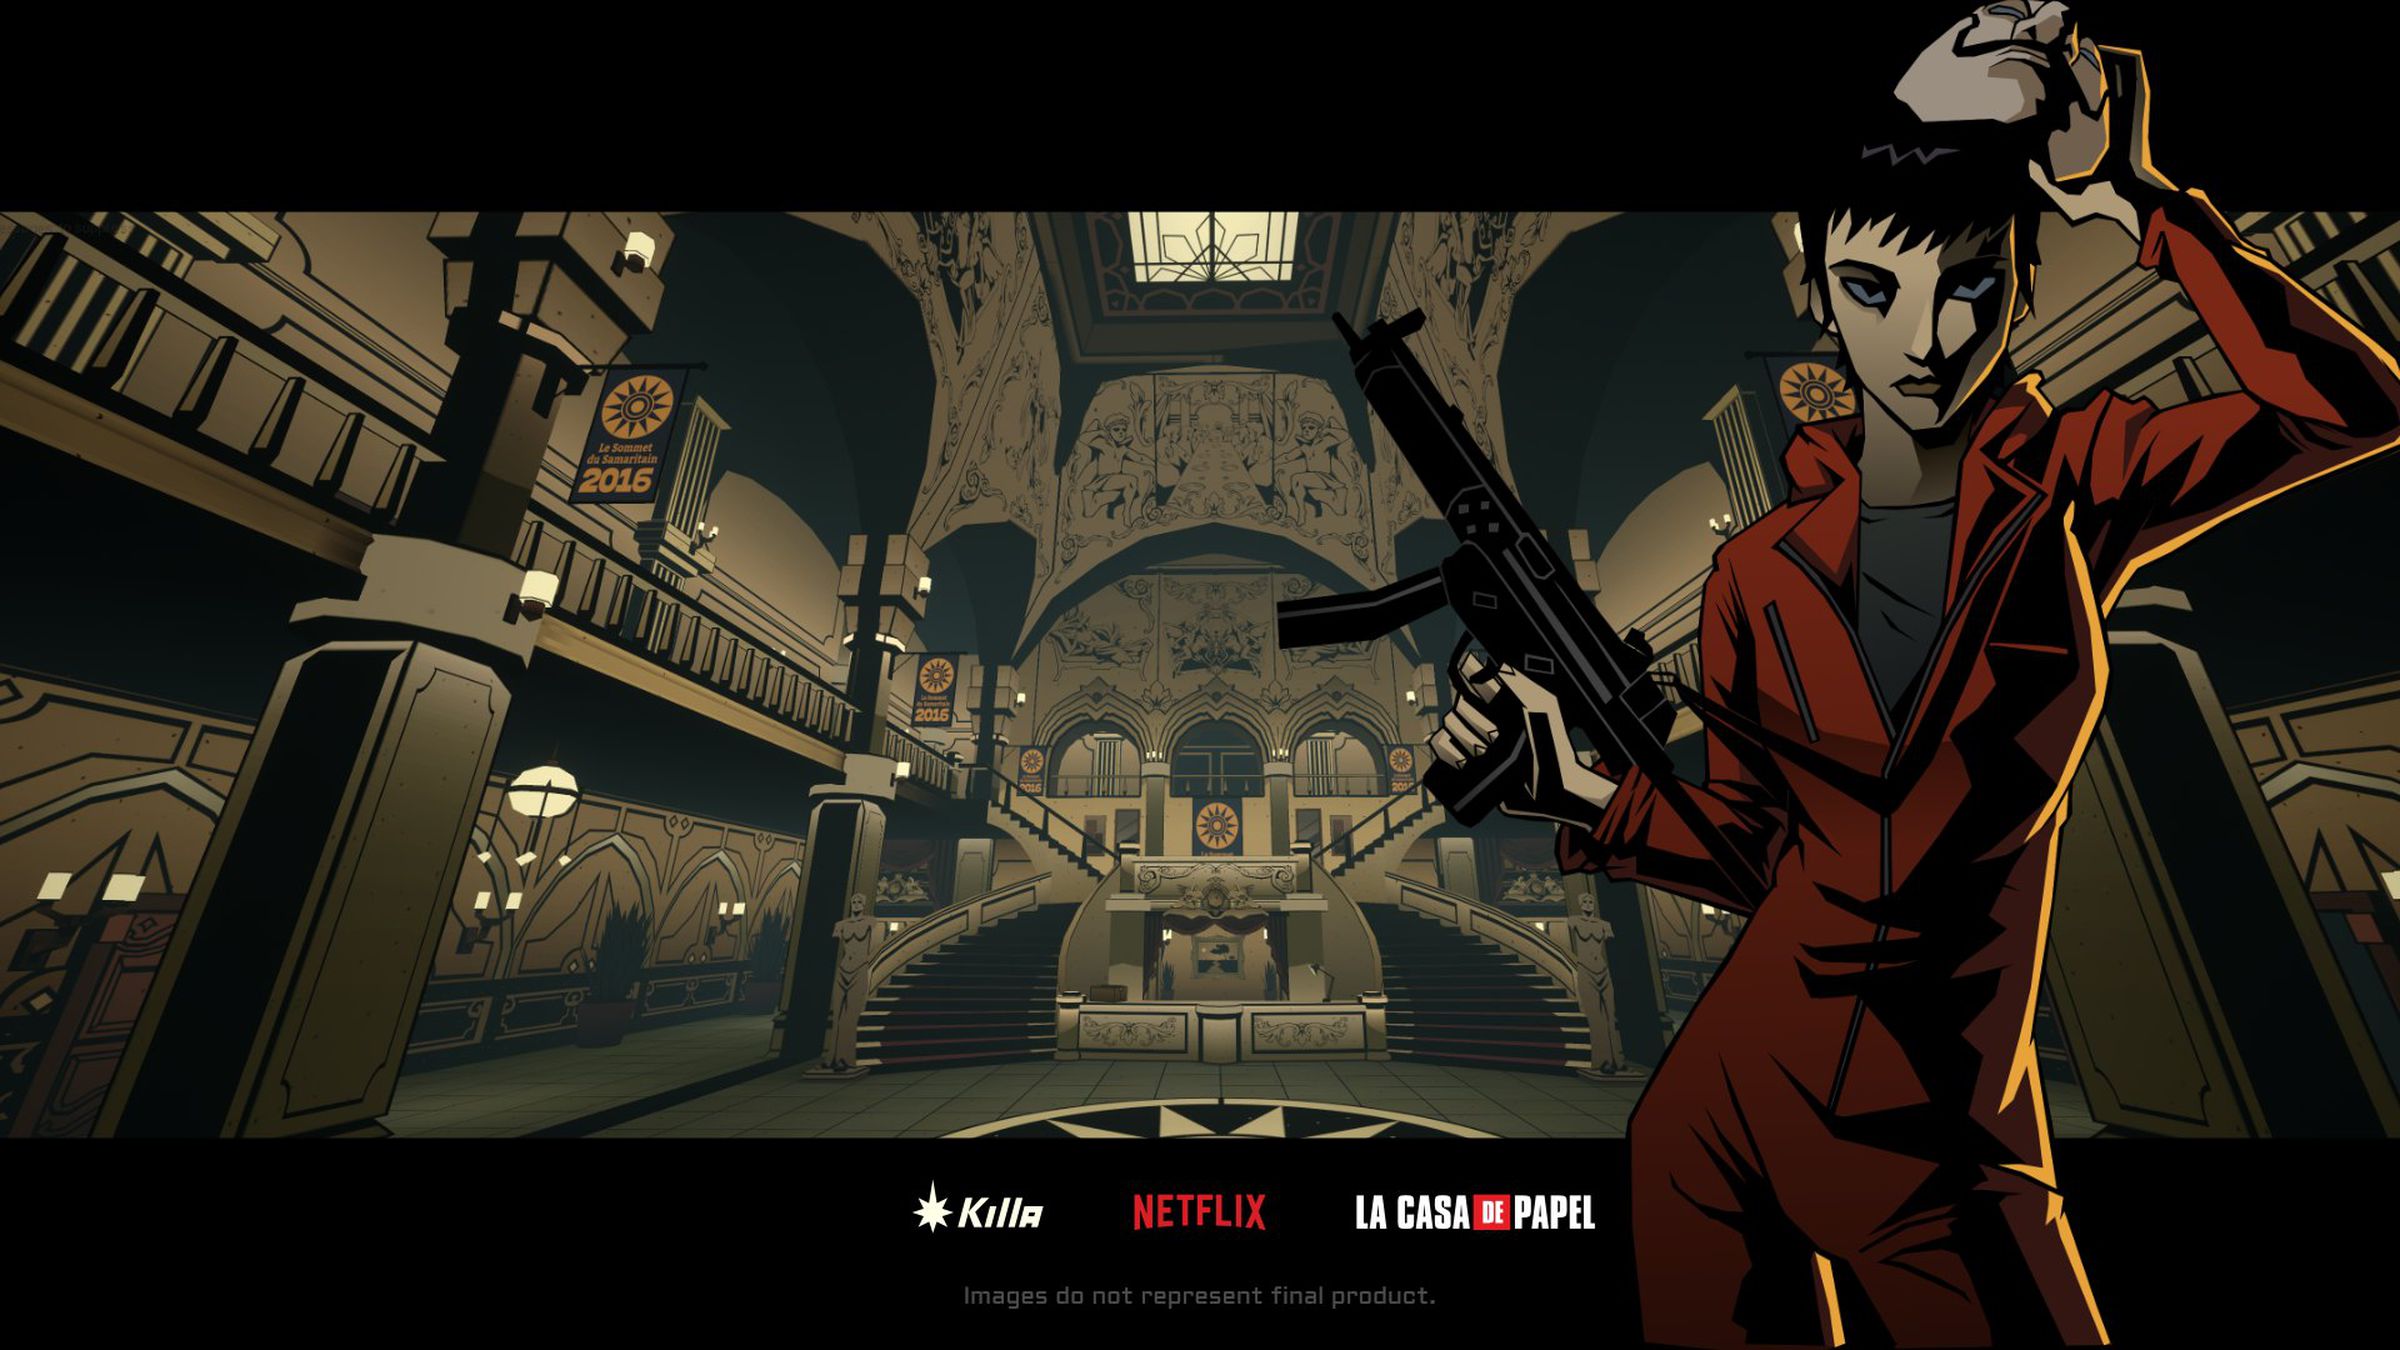 Promo image for Netflix’s La Casa de Papel (Money Heist) game